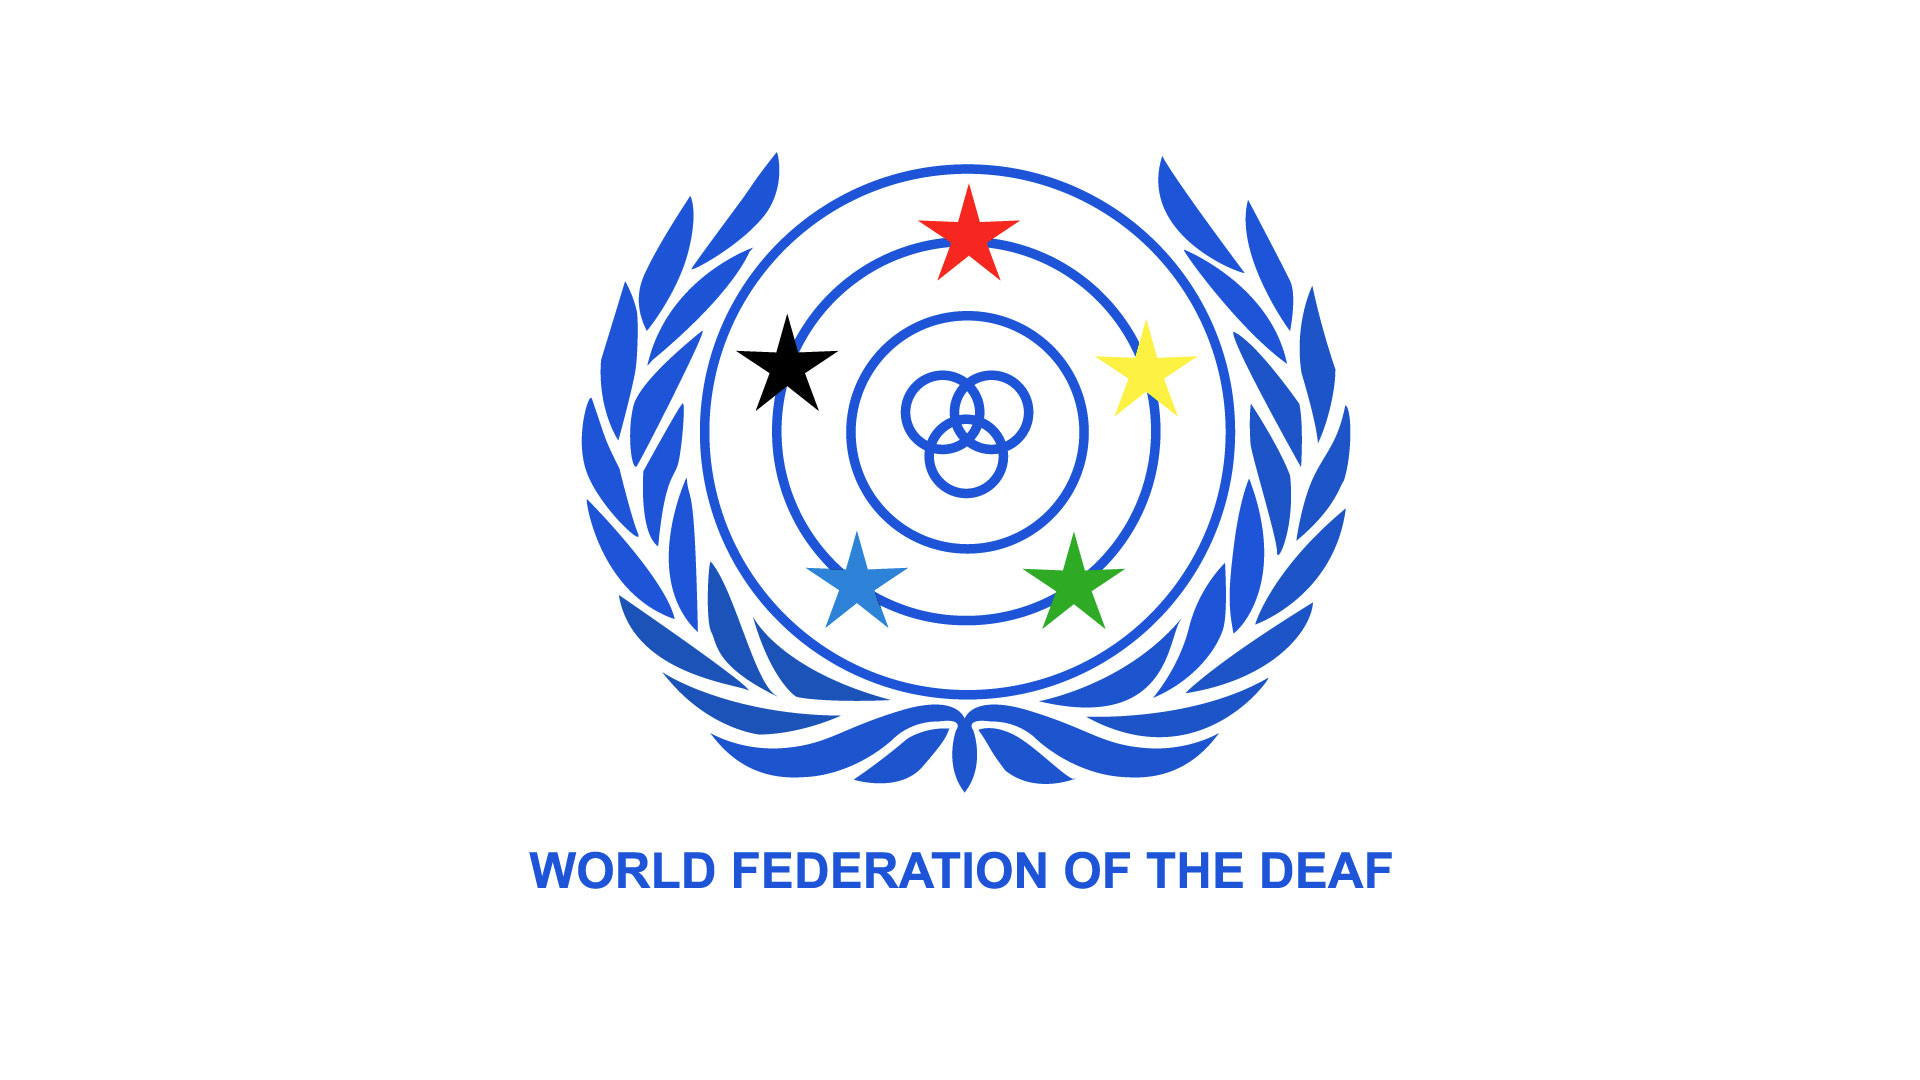 Historia de la “Federación Mundial de Sordos” (WDF)